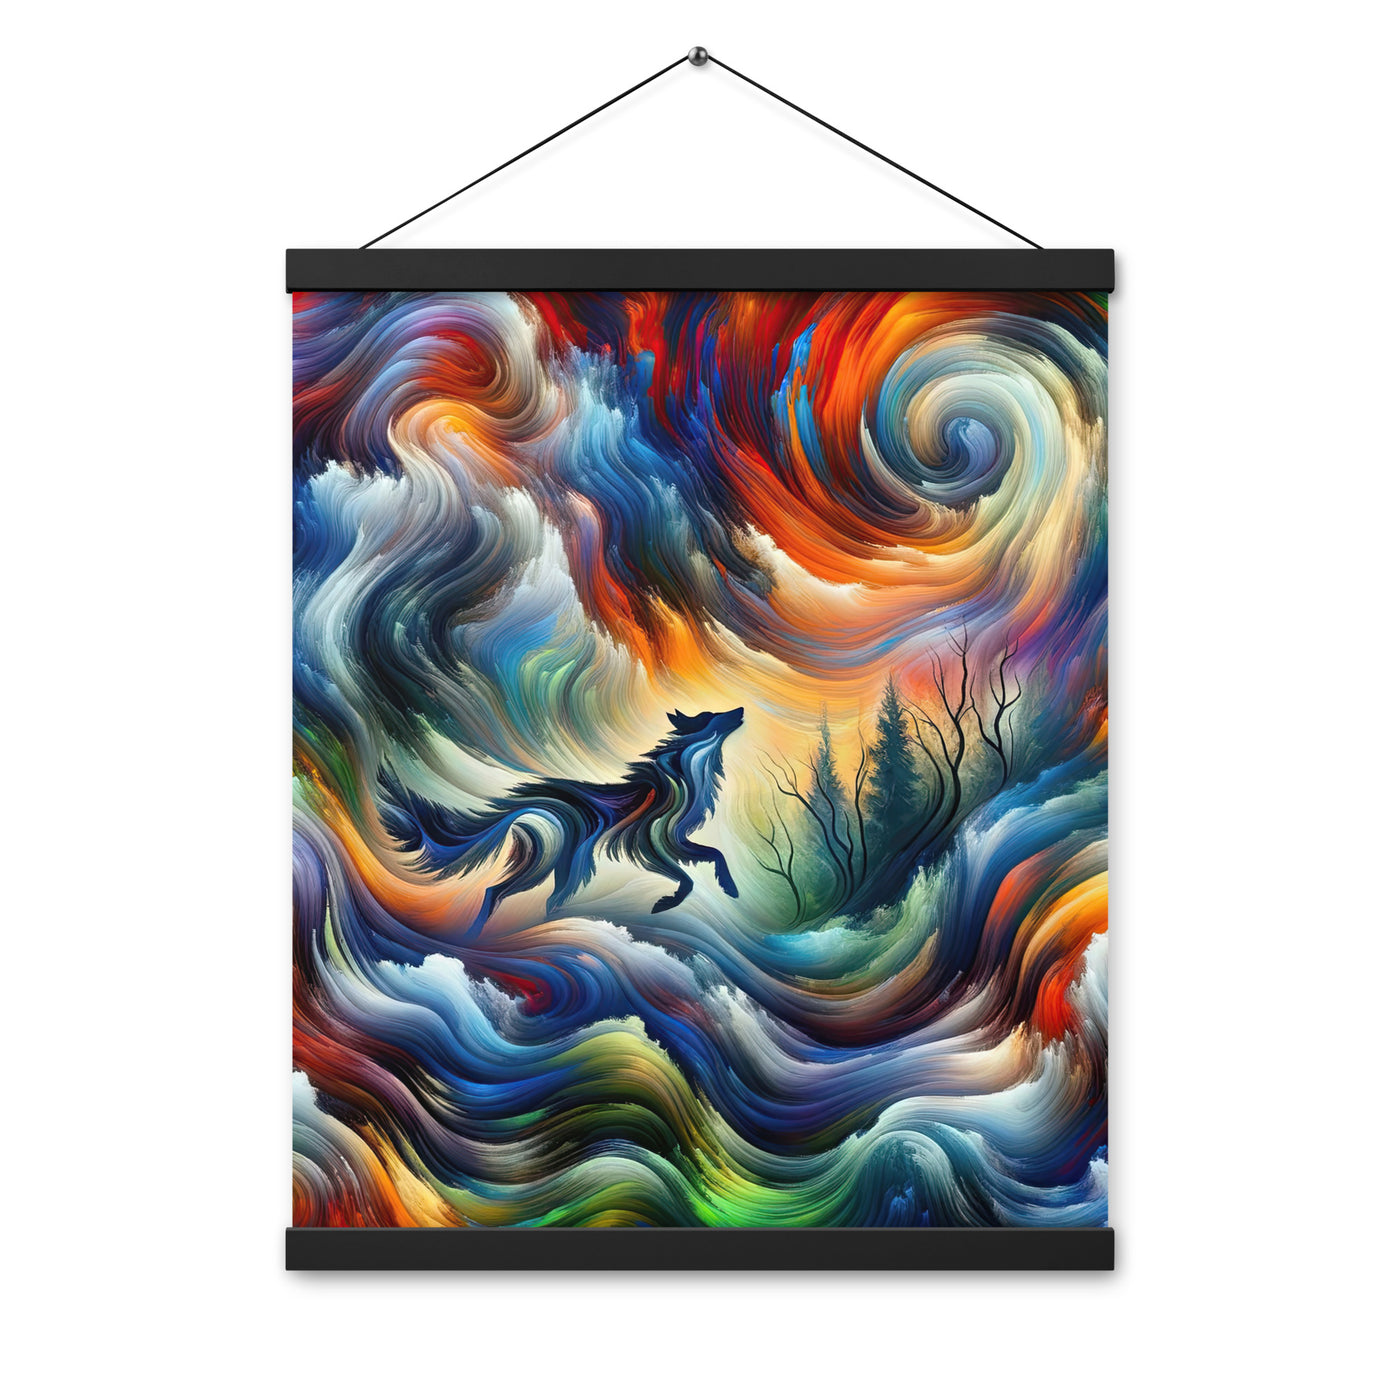 Alpen Abstraktgemälde mit Wolf Silhouette in lebhaften Farben (AN) - Premium Poster mit Aufhängung xxx yyy zzz 40.6 x 50.8 cm